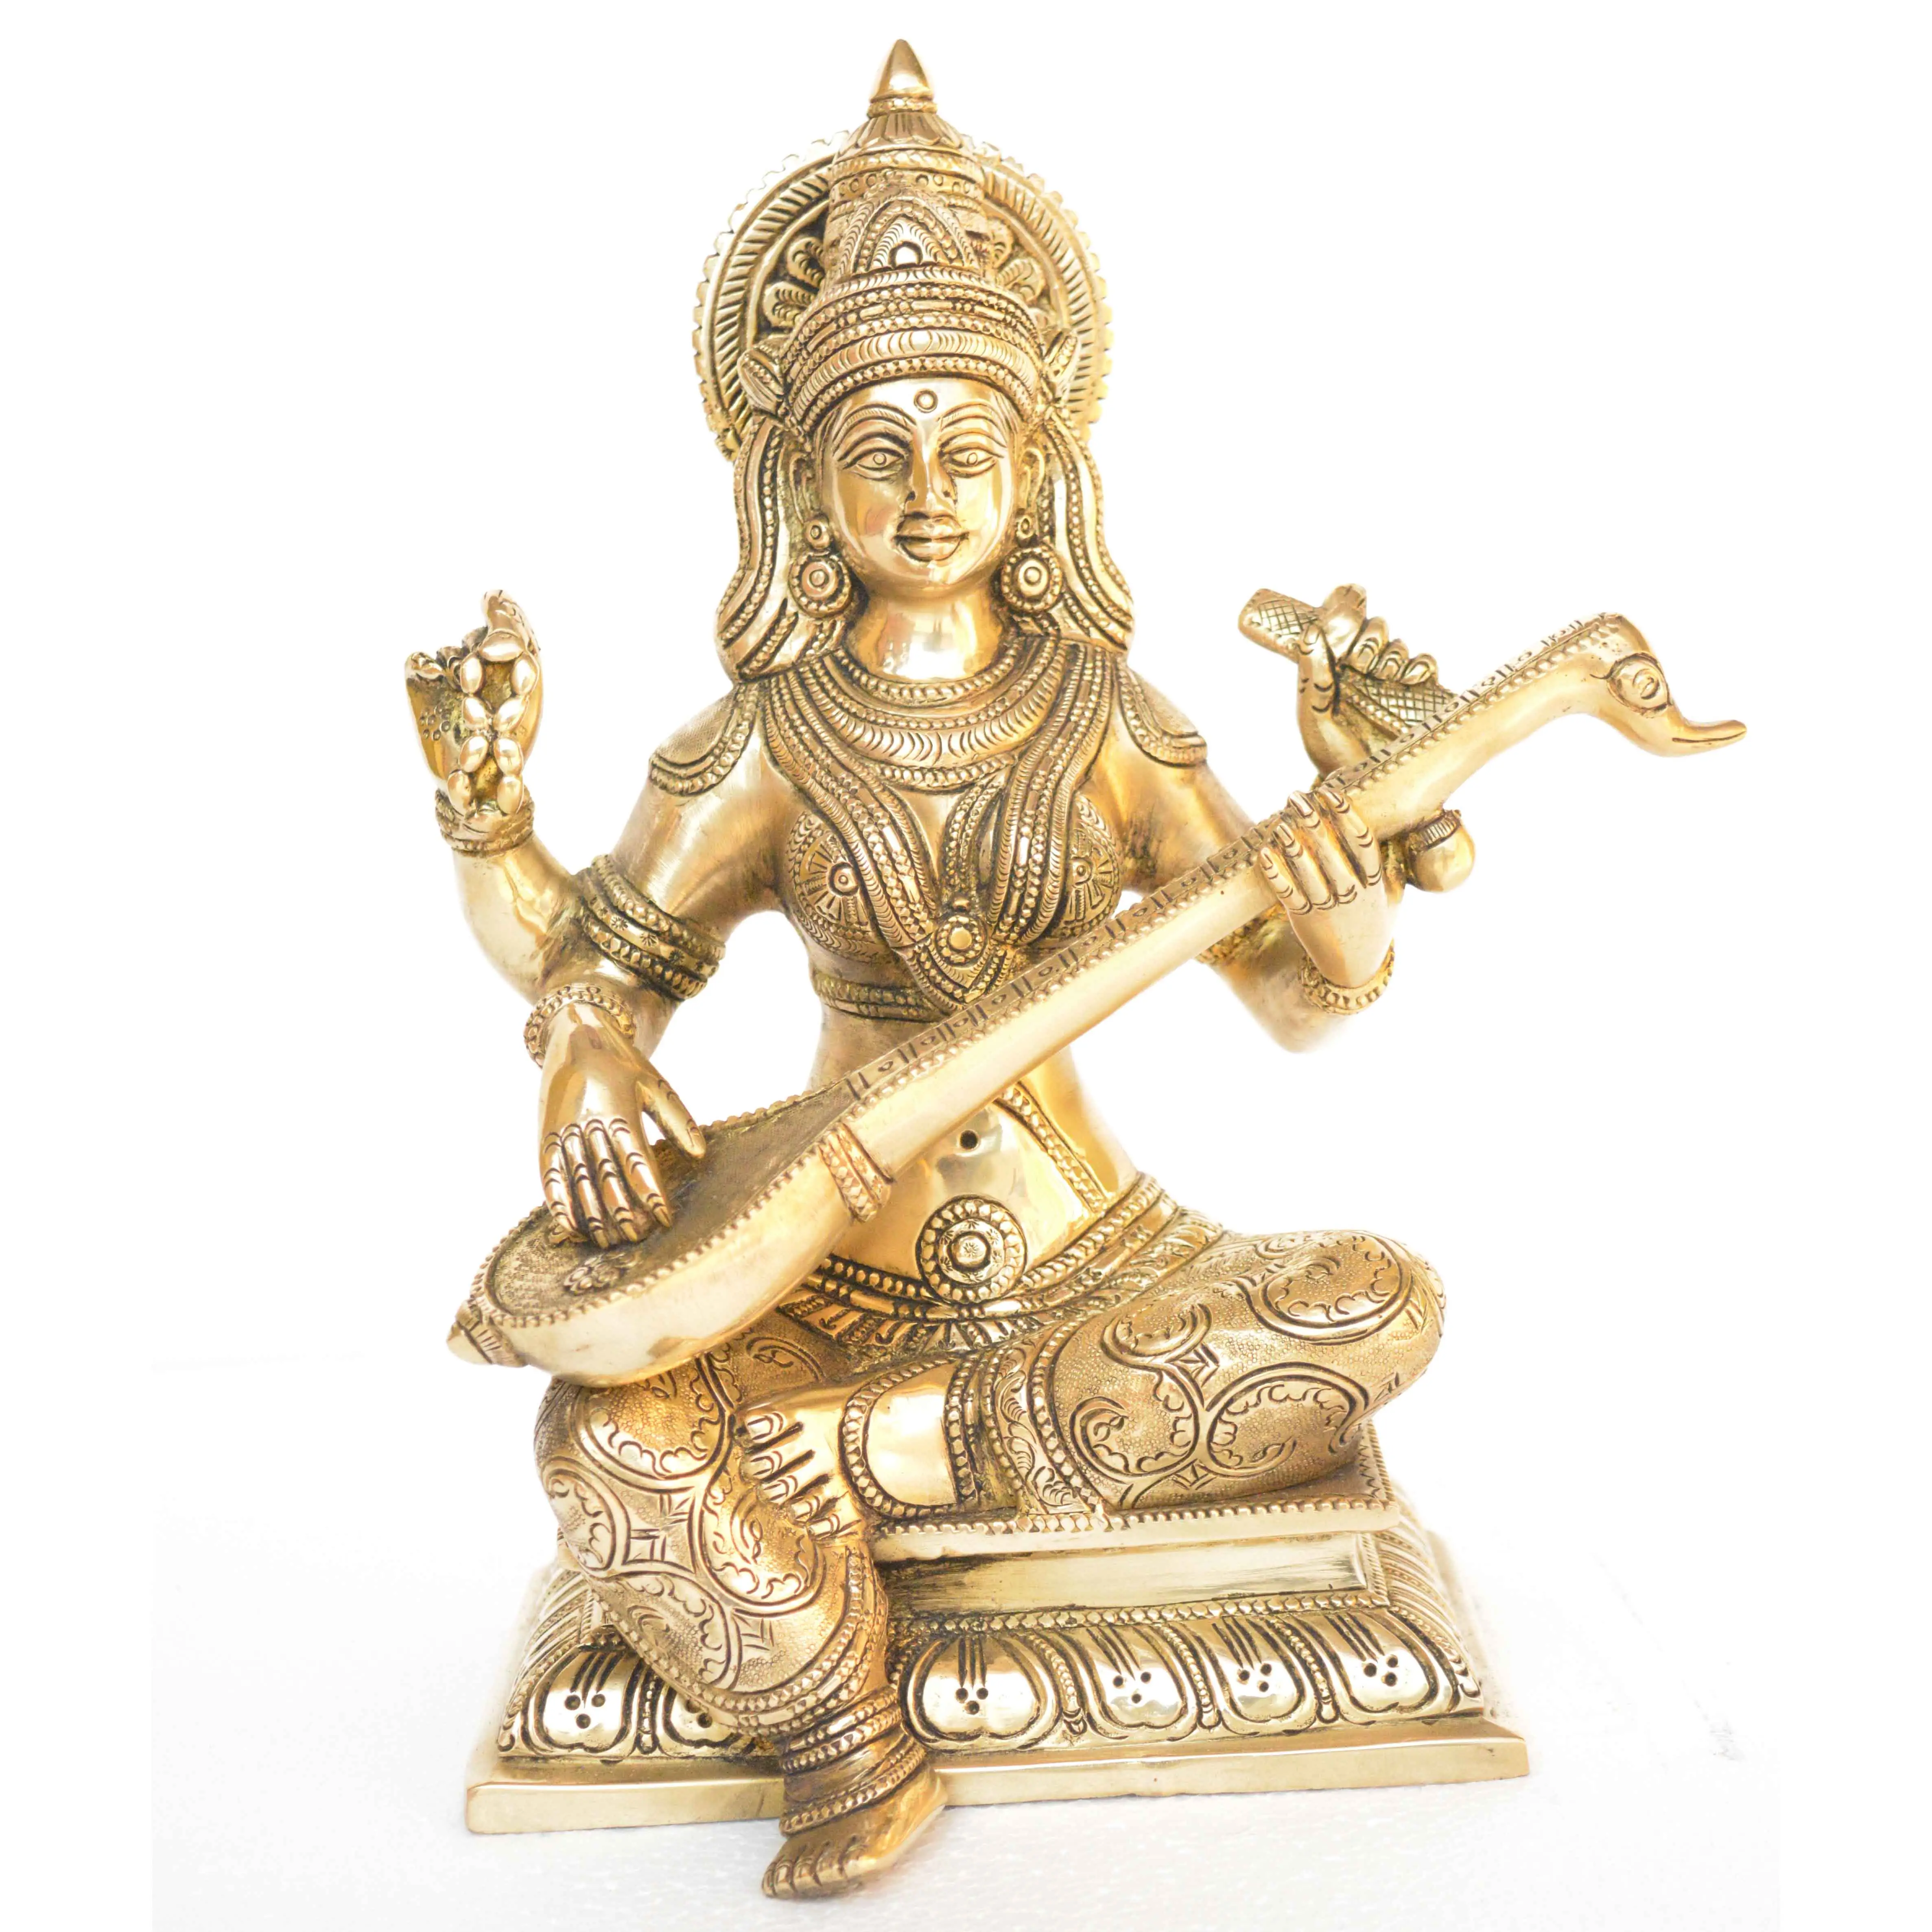 アンティーク仕上げの真ちゅう製の女神サラスワティ像真ちゅう製の金属製の手彫りの像芸術と知識の女神